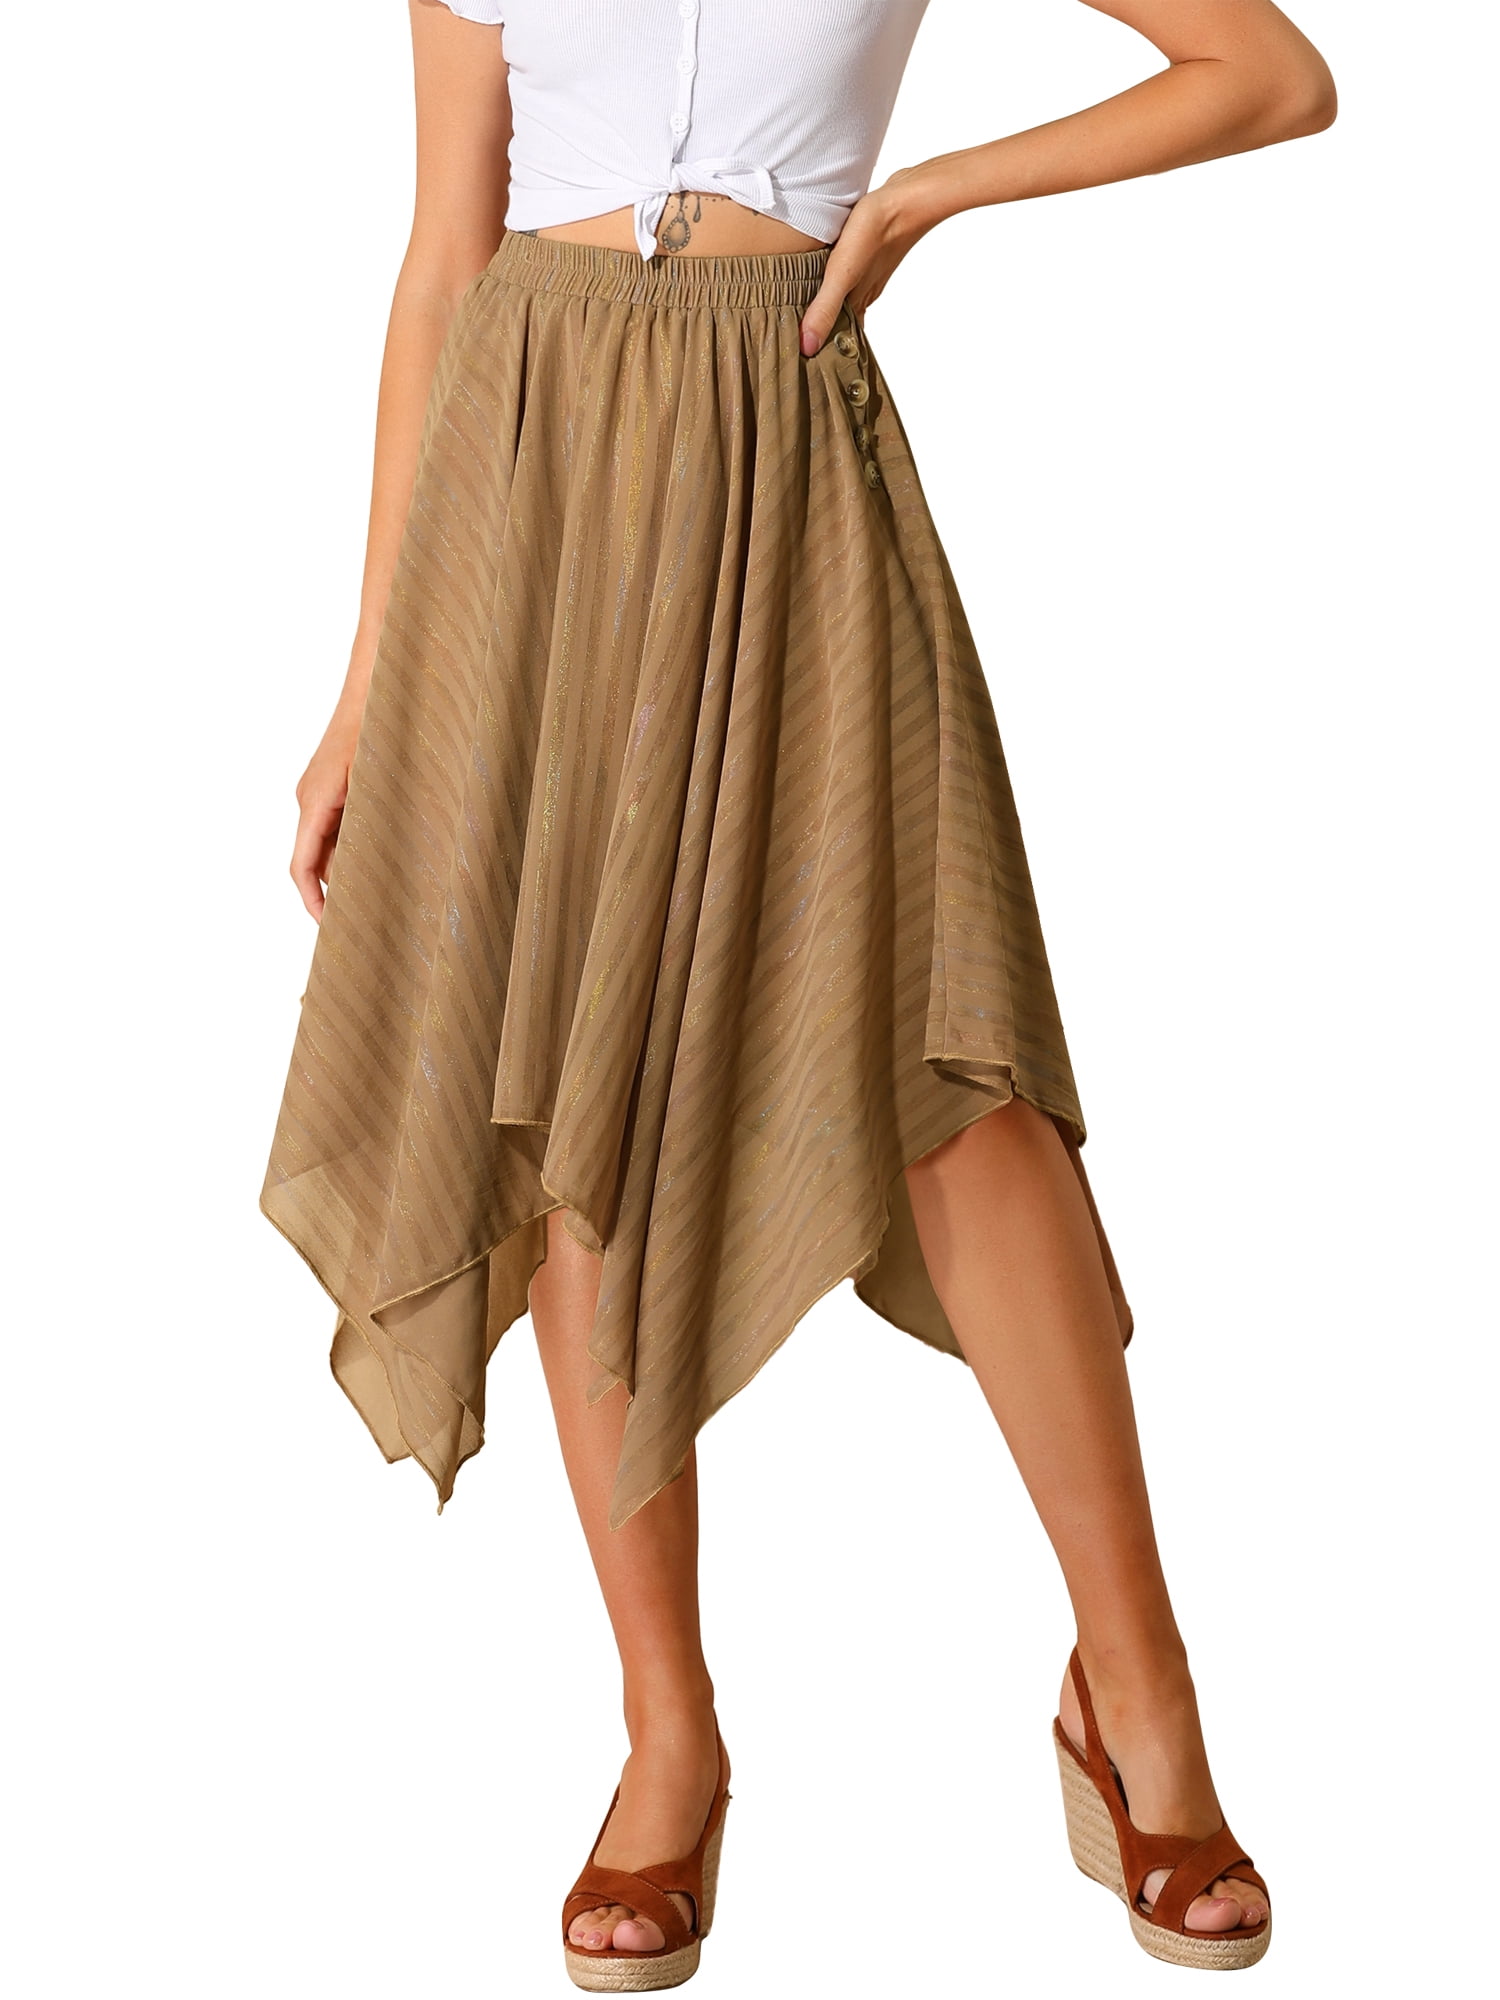 Women Casual Comfy Cotton Linen Skirts Frill Tie Waist A-Line Midi Skirt Flowy Handkerchief Hemline Long Skirt 